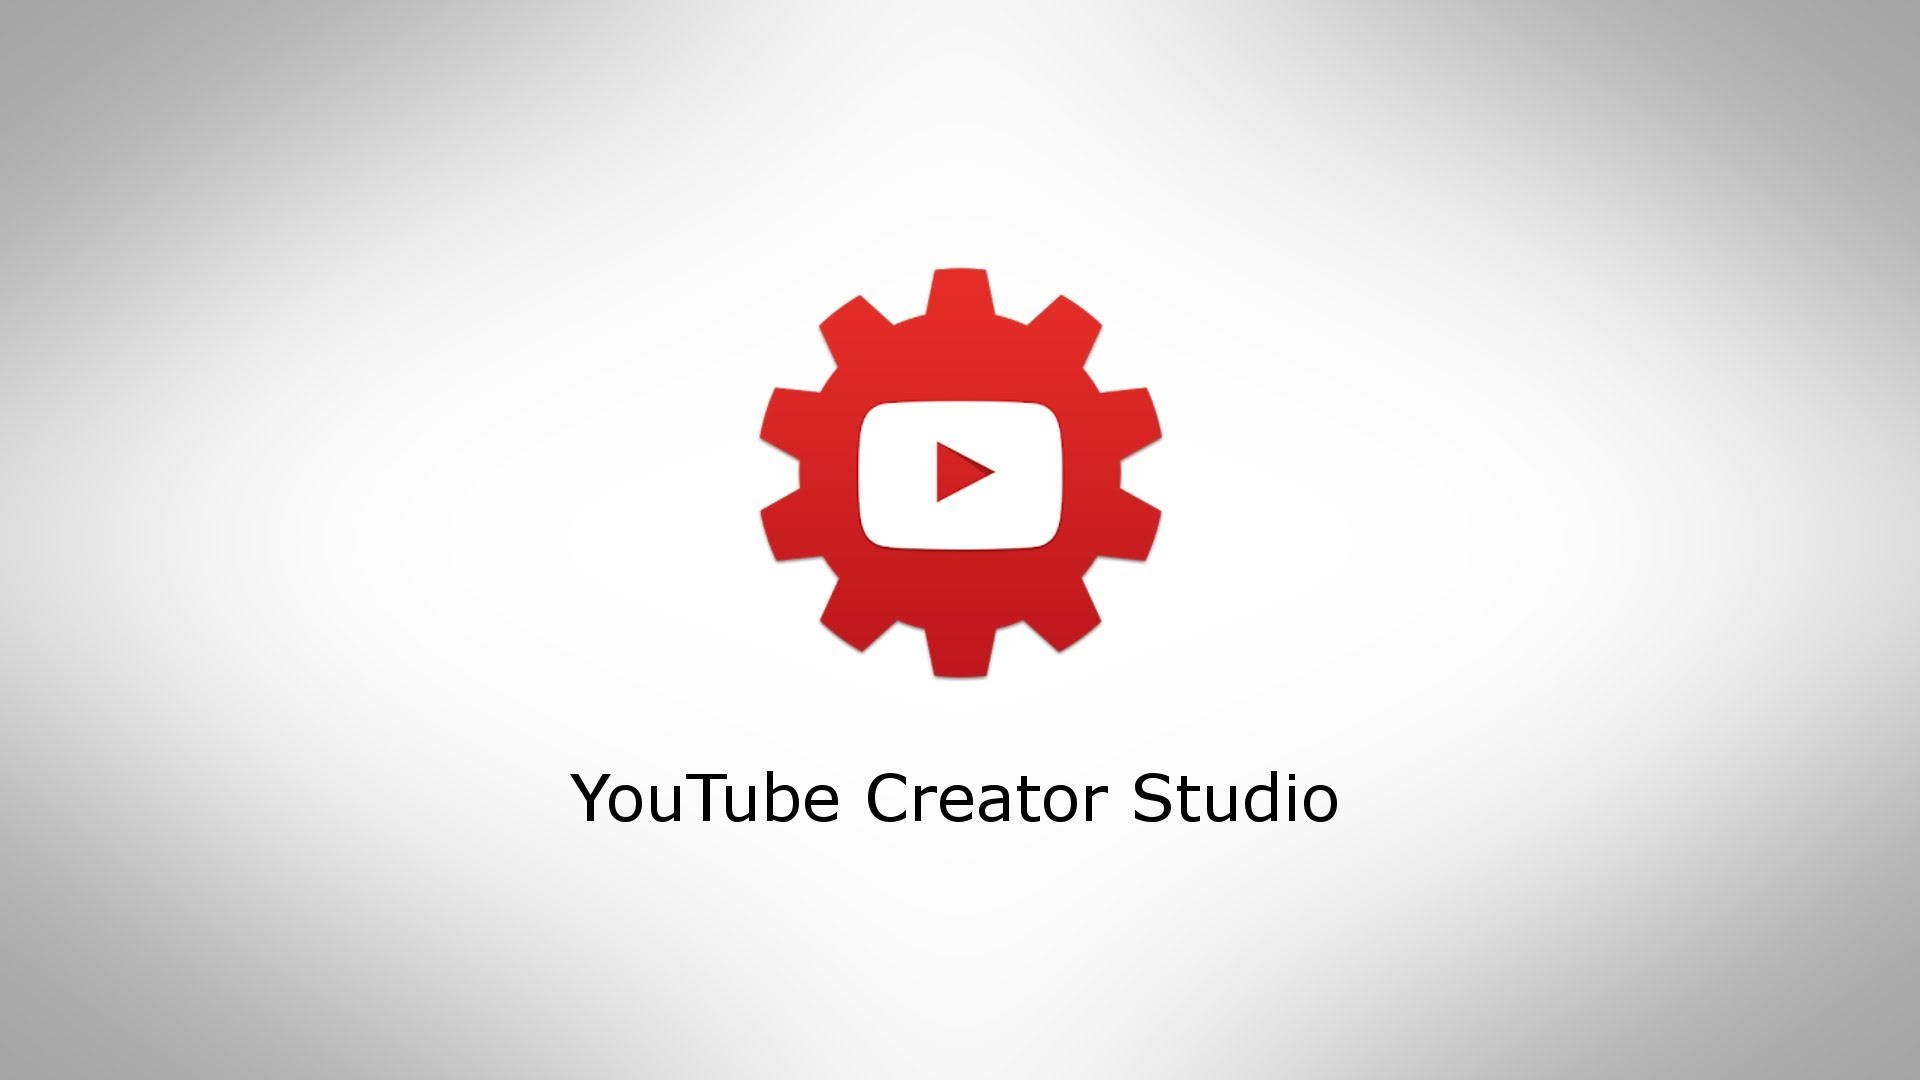 Ютуб студия войти. Youtube Studio. Ютуб студия. Youtube creator Studio. Творческая студия ютуб.